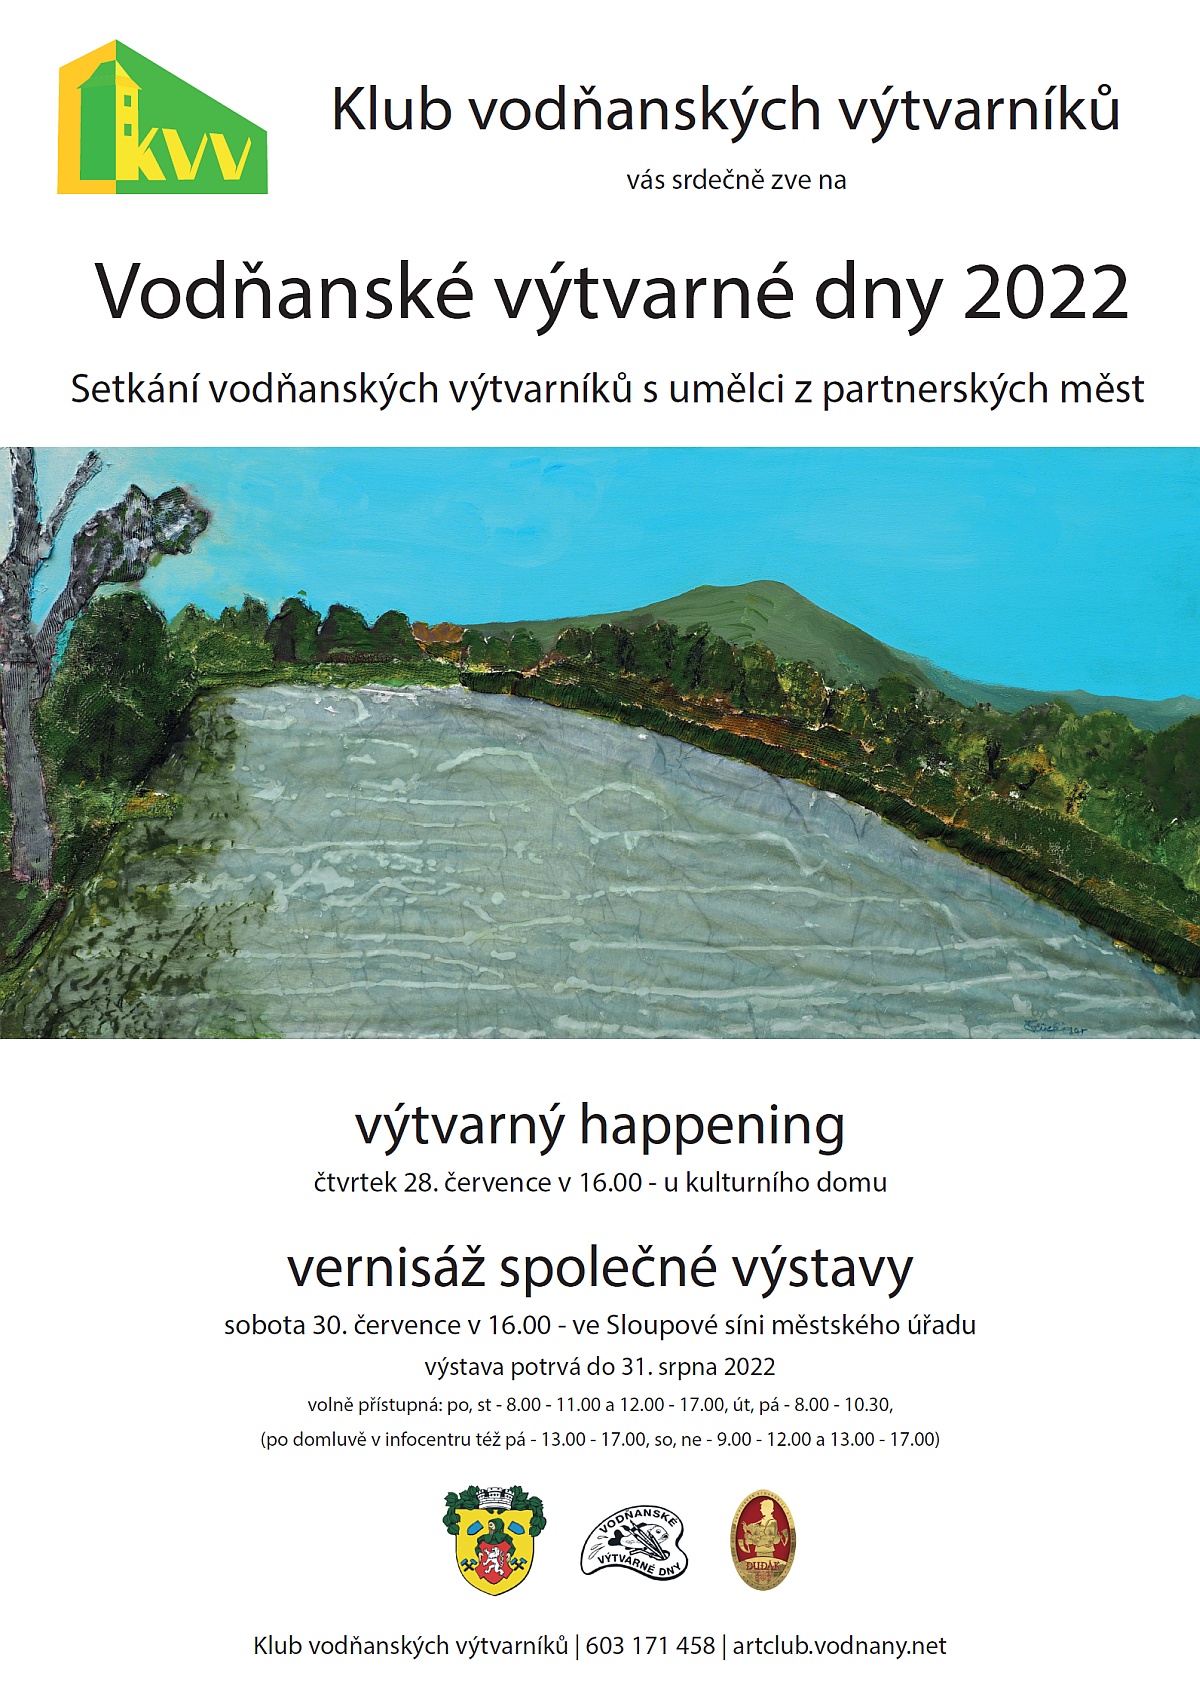 Obrázek - Vodňanské výtvarné dny 2022